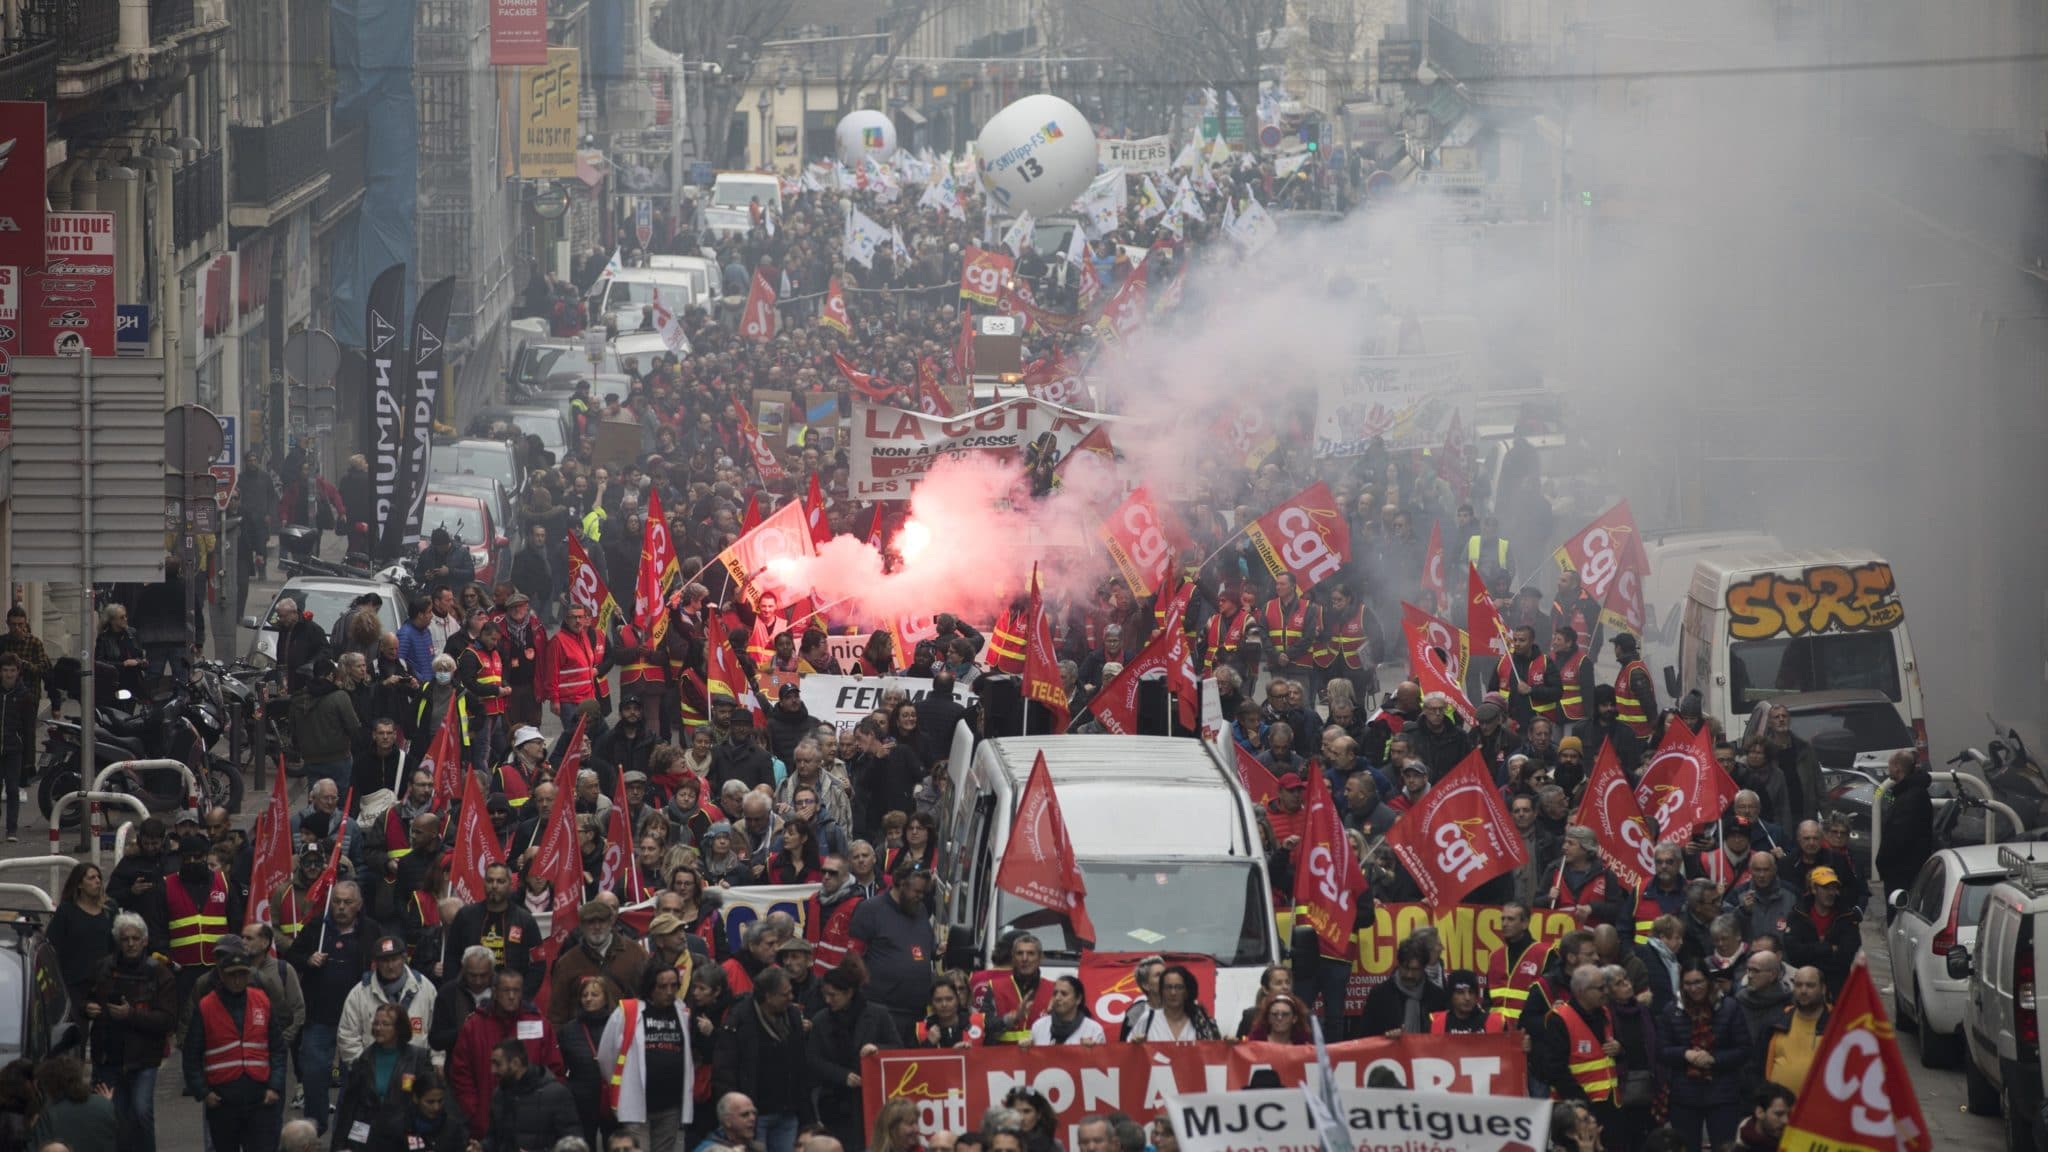 ОПШТИ КОЛАПС у Француској, масовни штрајк зауставио земљу (видео)